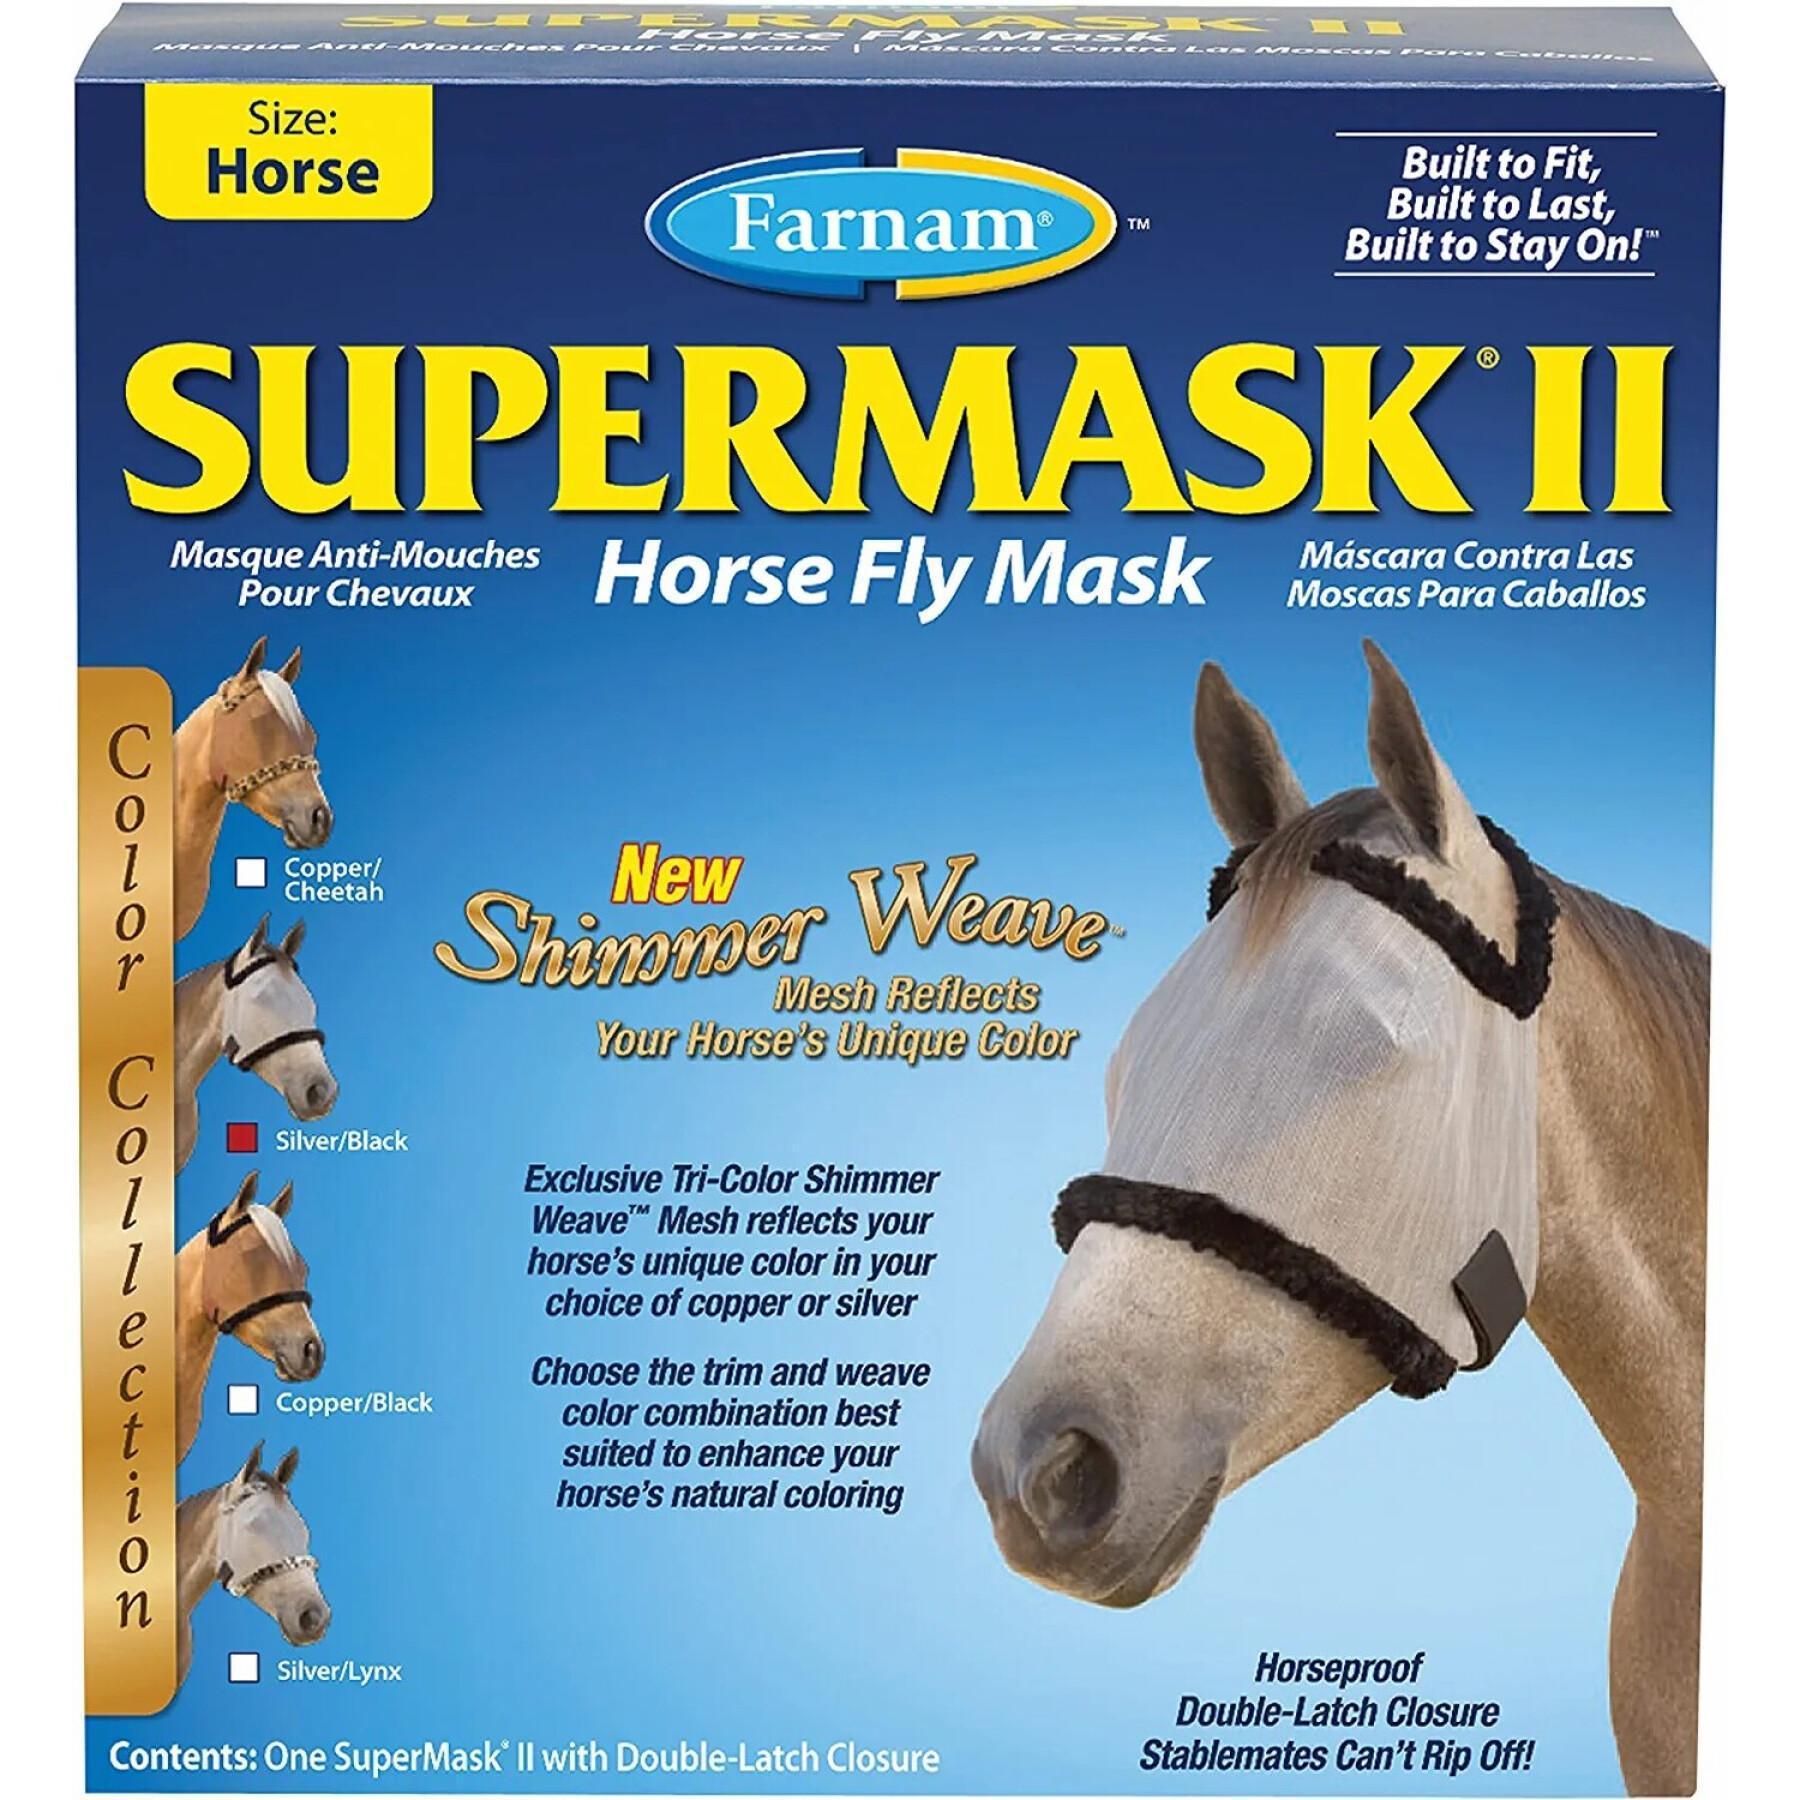 Masque anti-mouches pour cheval sans oreilles Farnam Supermask Foal foal/pony